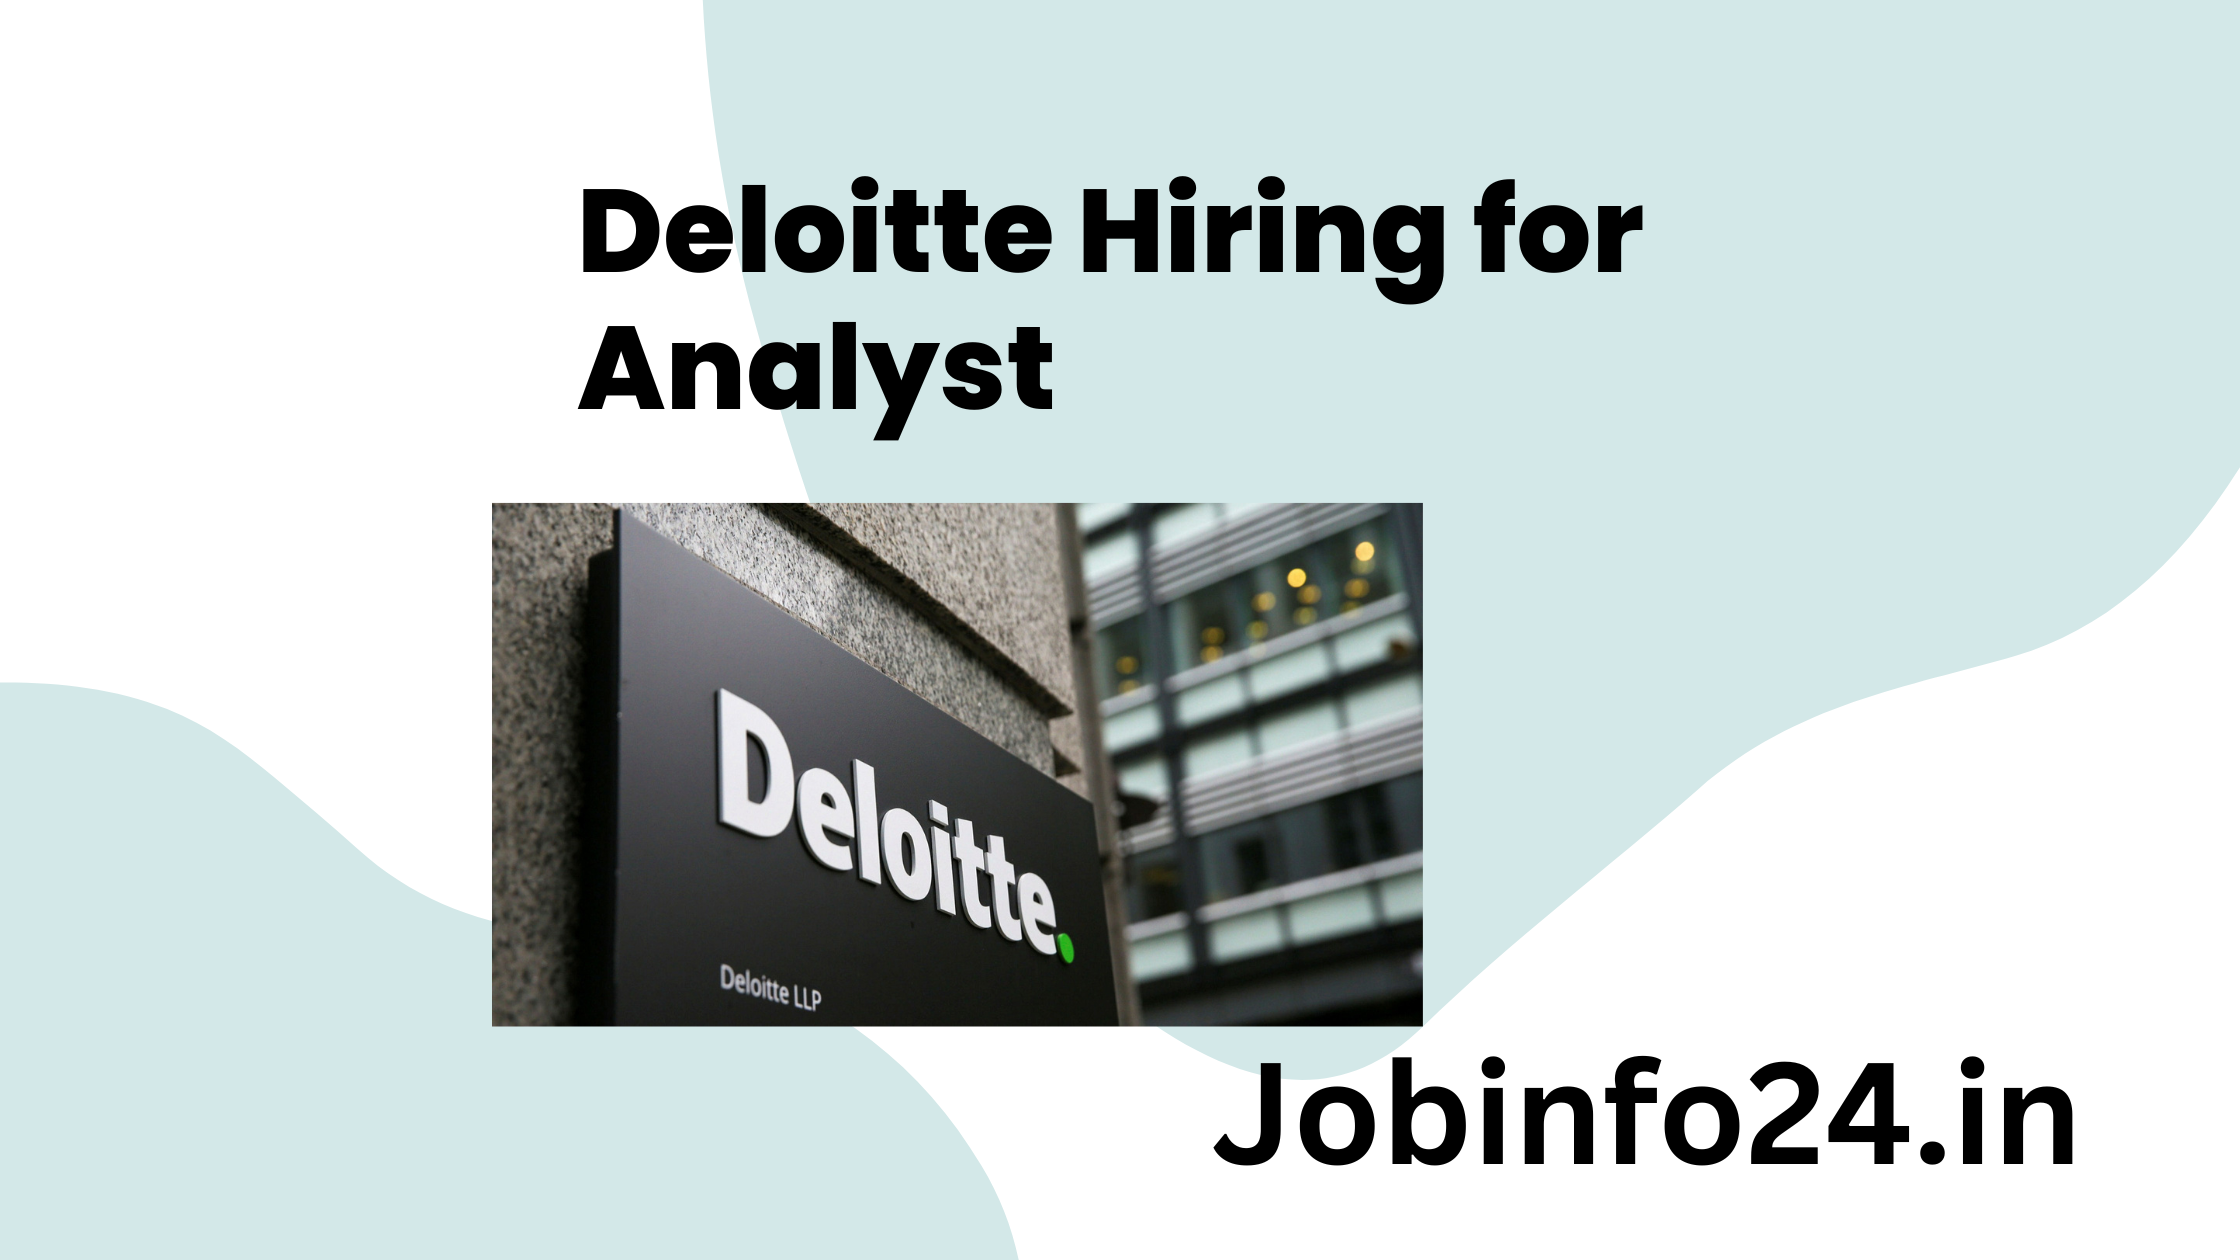 Deloitte Hiring for Analyst